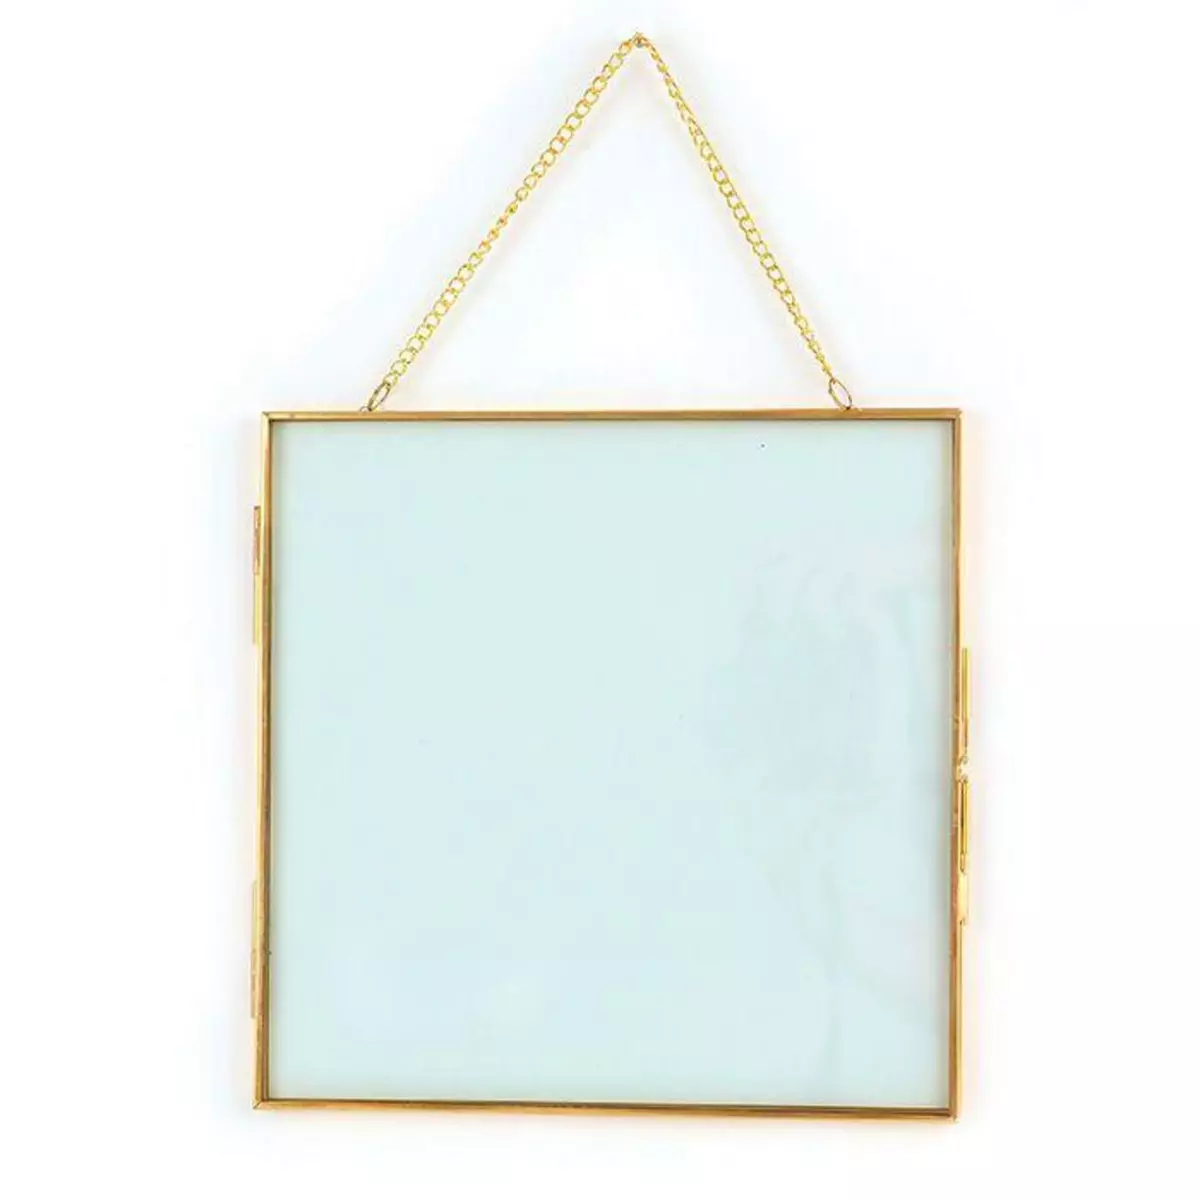 Graine créative Cadre en verre vintage - carré avec chaîne métallique - 20 x 20 cm